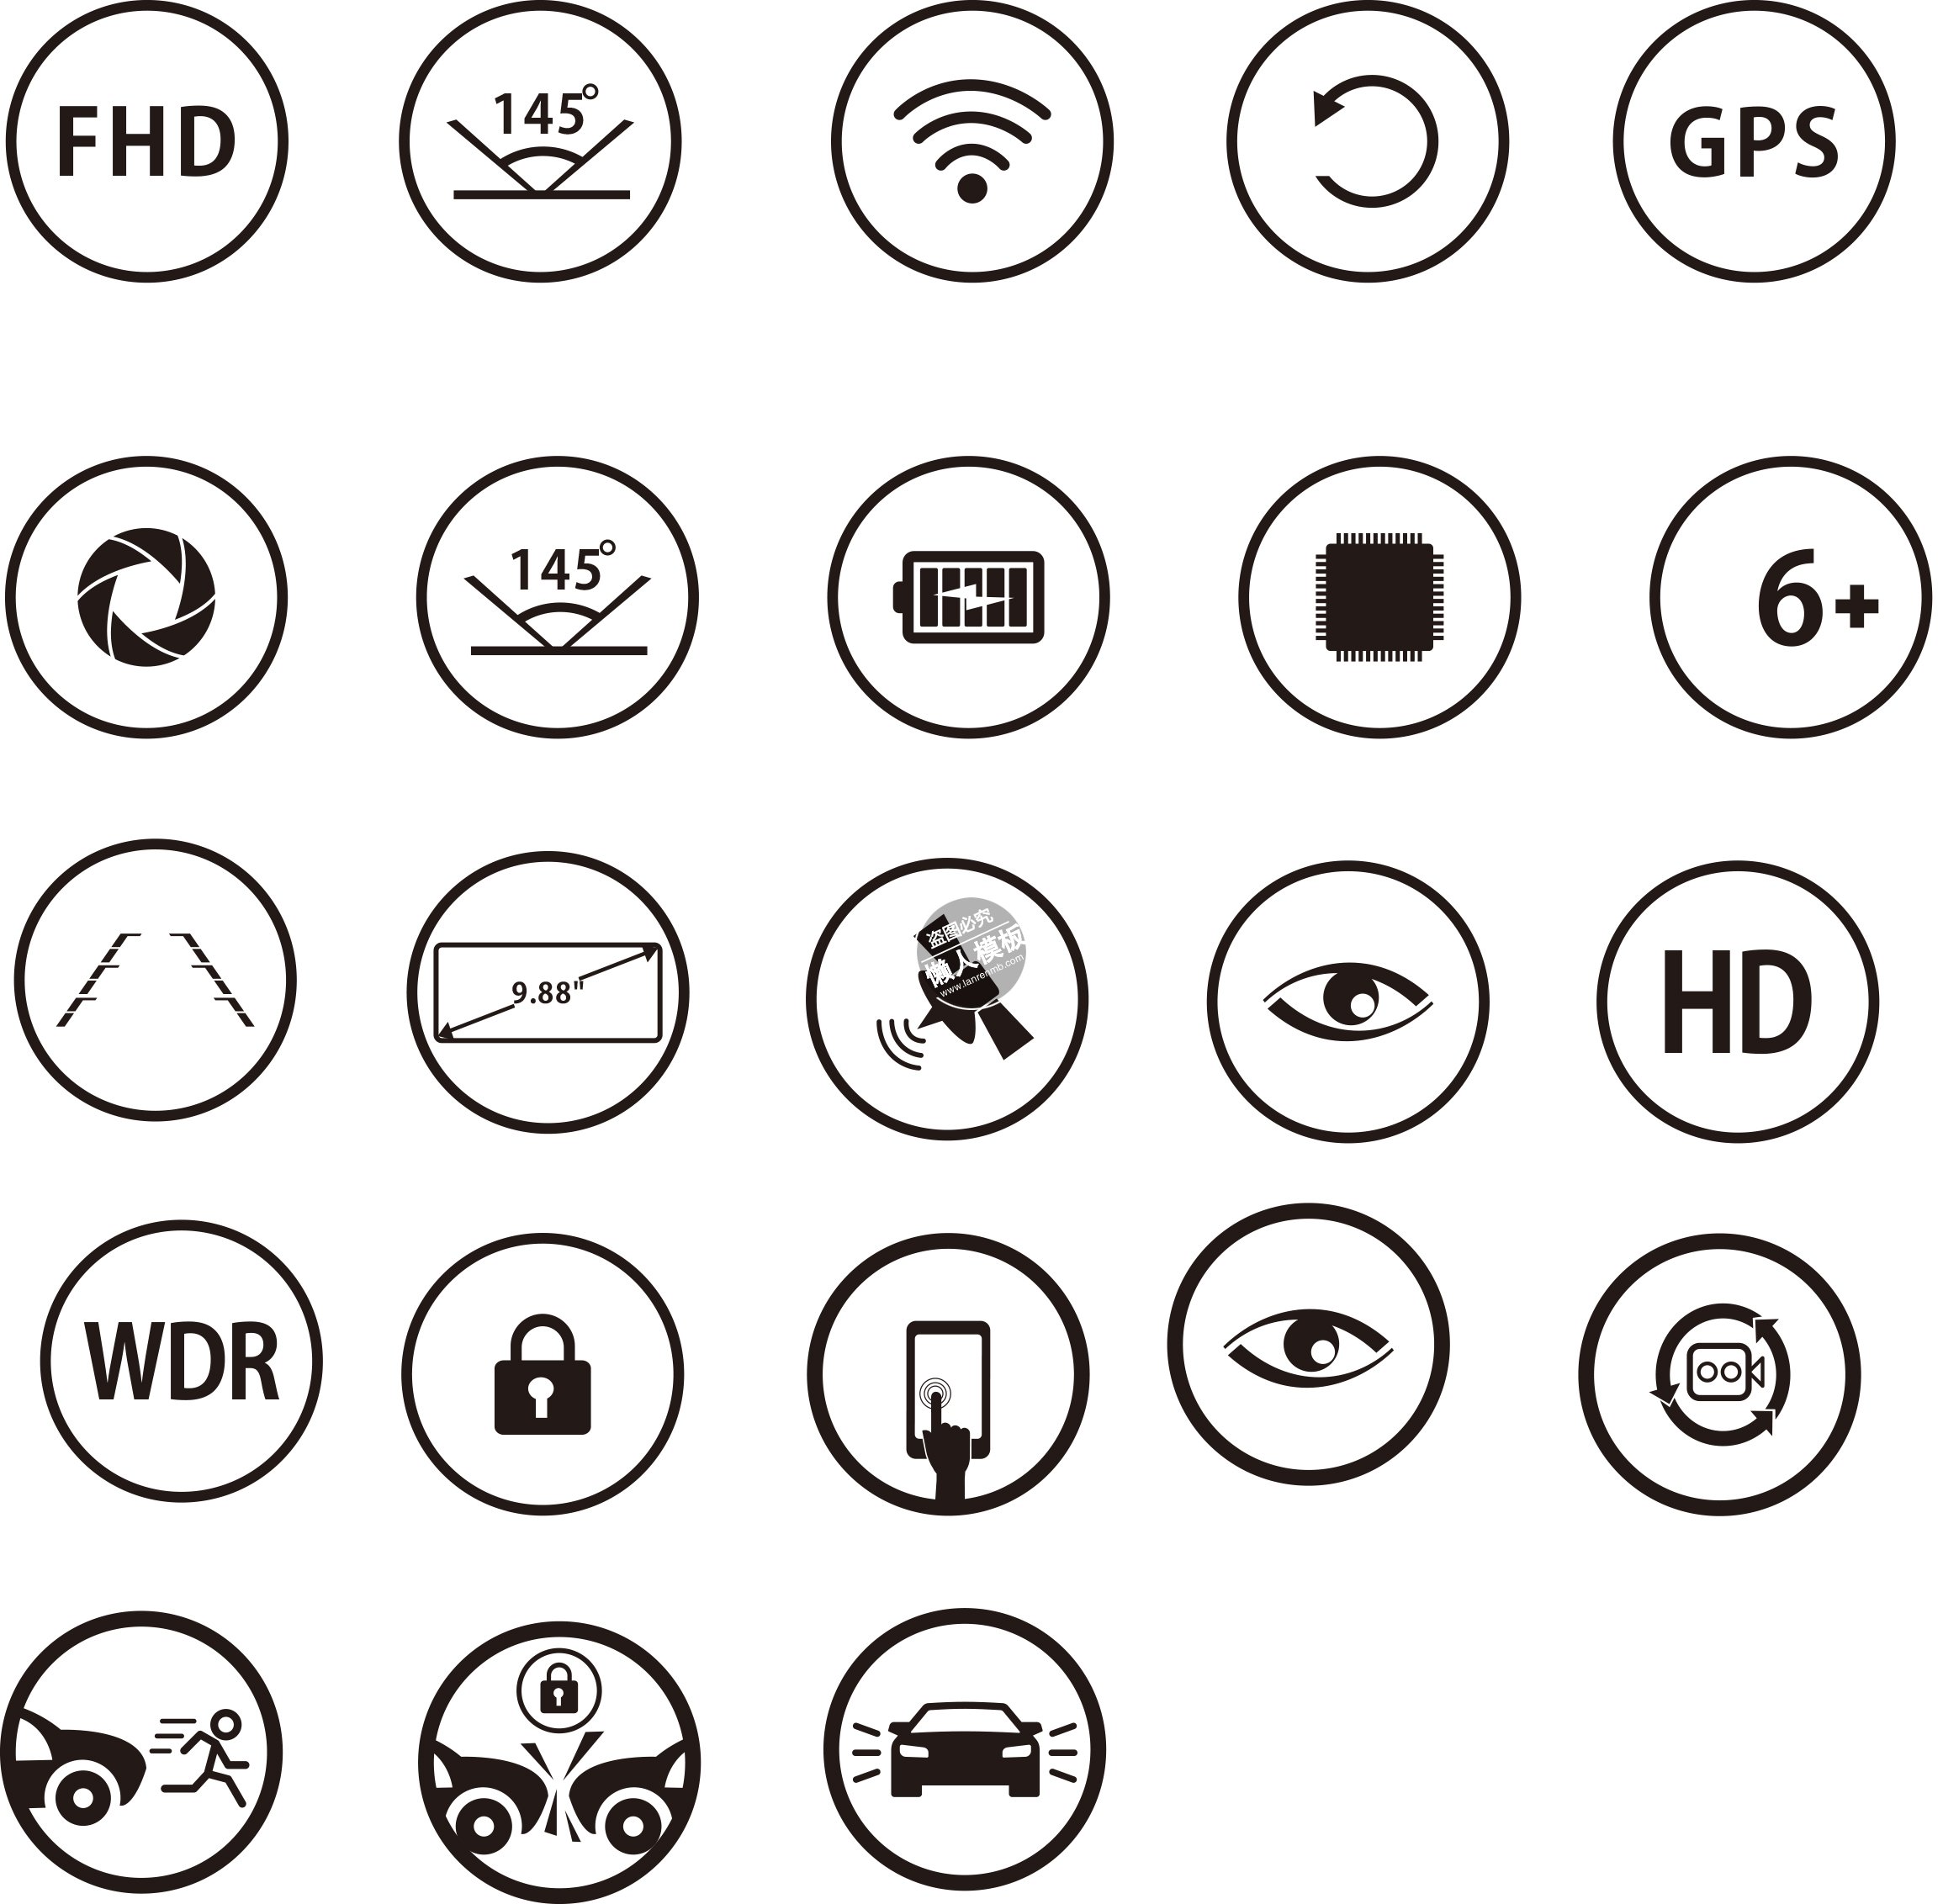 行车记录仪类型icon图标合集ui设计移动端手机psd图片素材下载